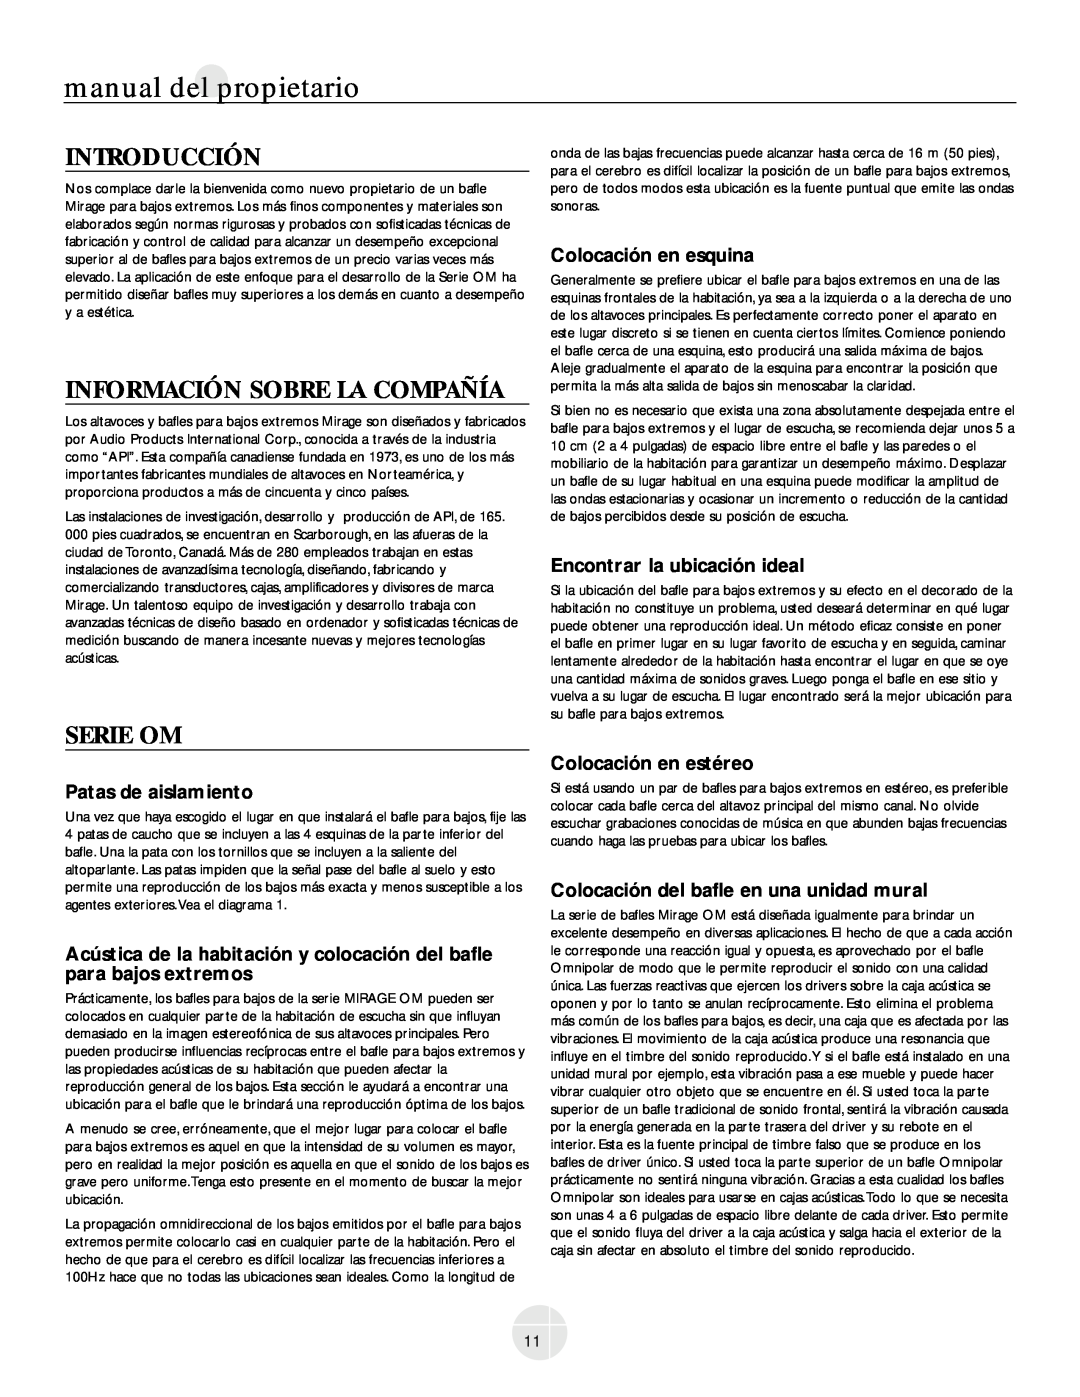 Mirage Loudspeakers OM-200 owner manual Introducción, Información Sobre La Compañía, Serie Om, Patas de aislamiento 